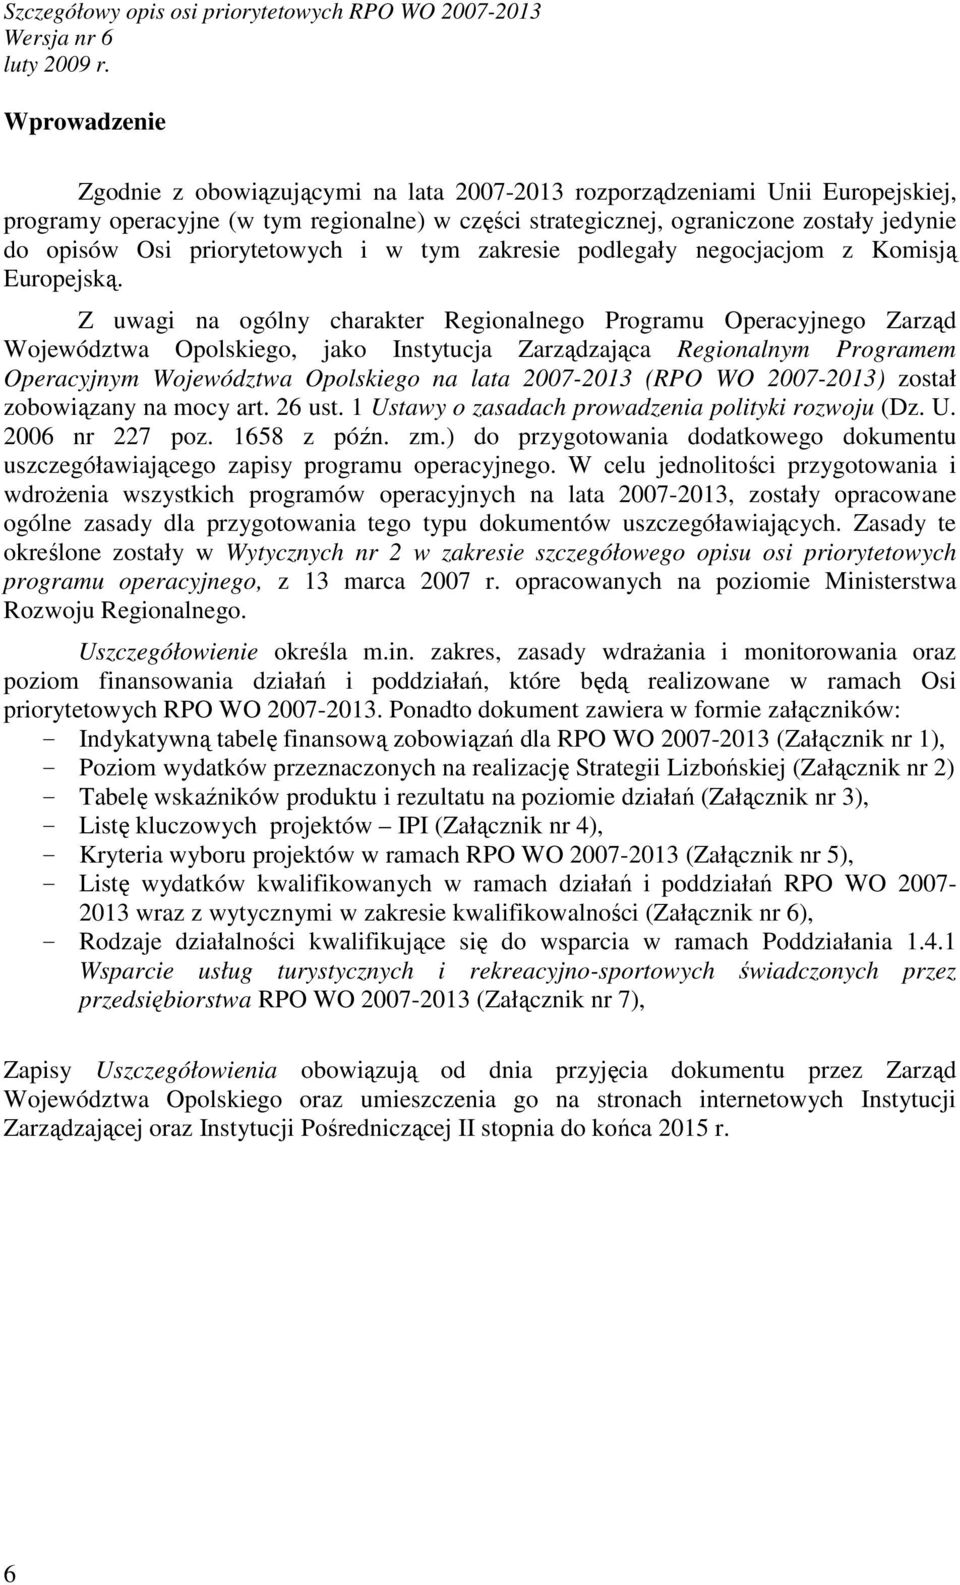 Z uwagi na ogólny charakter Regionalnego Programu Operacyjnego Zarząd Województwa Opolskiego, jako Instytucja Zarządzająca Regionalnym Programem Operacyjnym Województwa Opolskiego na lata 2007-2013